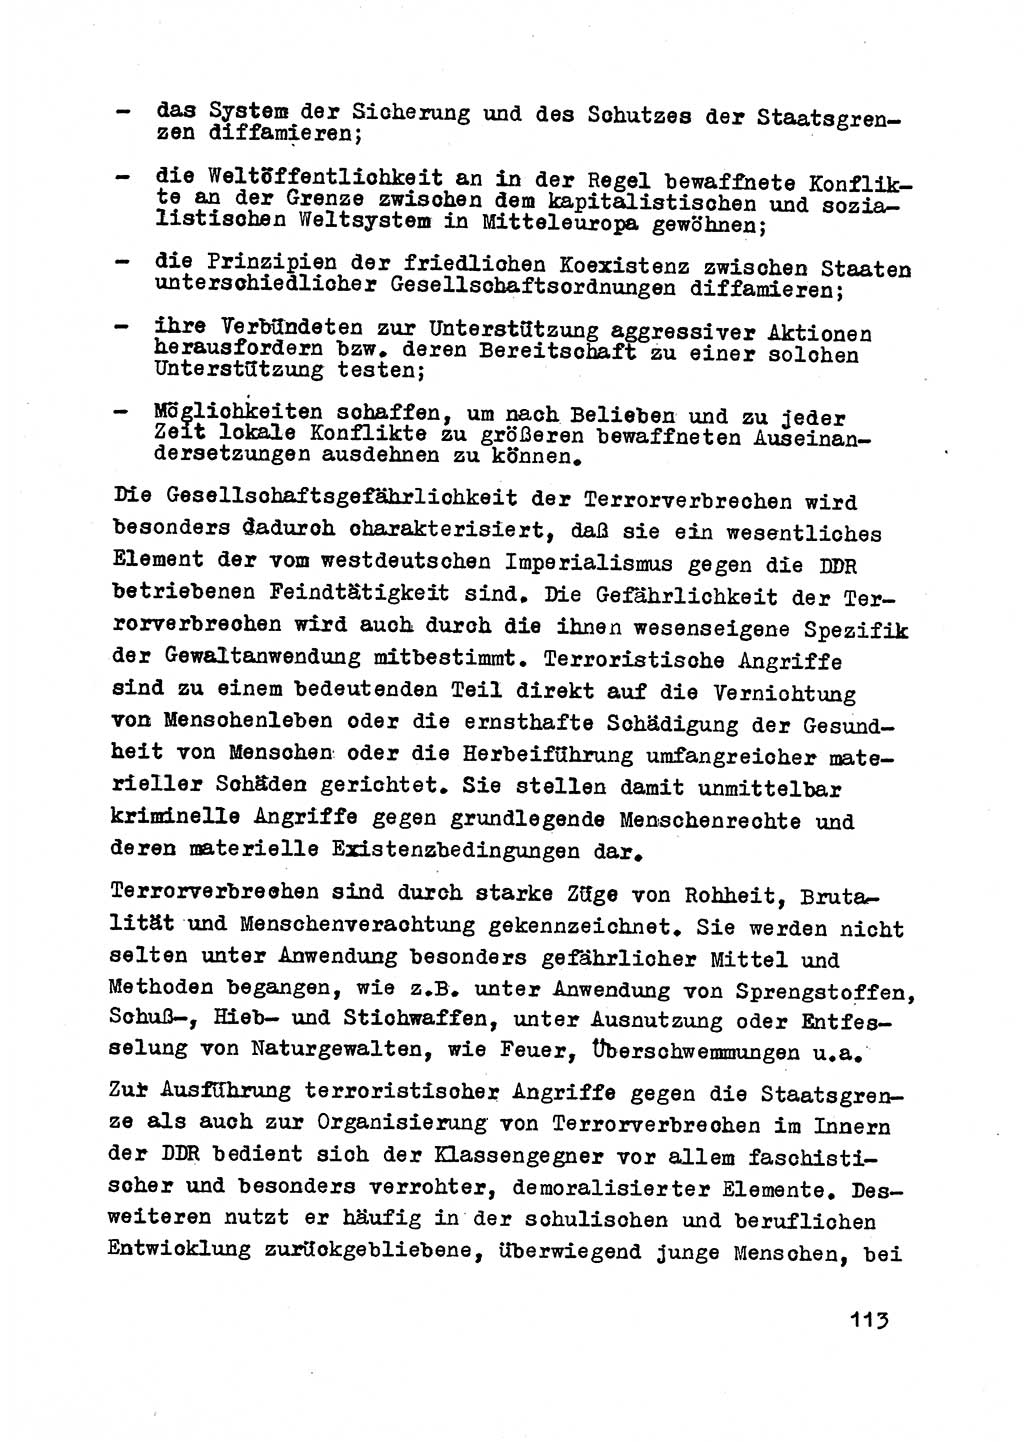 Strafrecht der DDR (Deutsche Demokratische Republik), Besonderer Teil, Lehrmaterial, Heft 2 1969, Seite 113 (Strafr. DDR BT Lehrmat. H. 2 1969, S. 113)